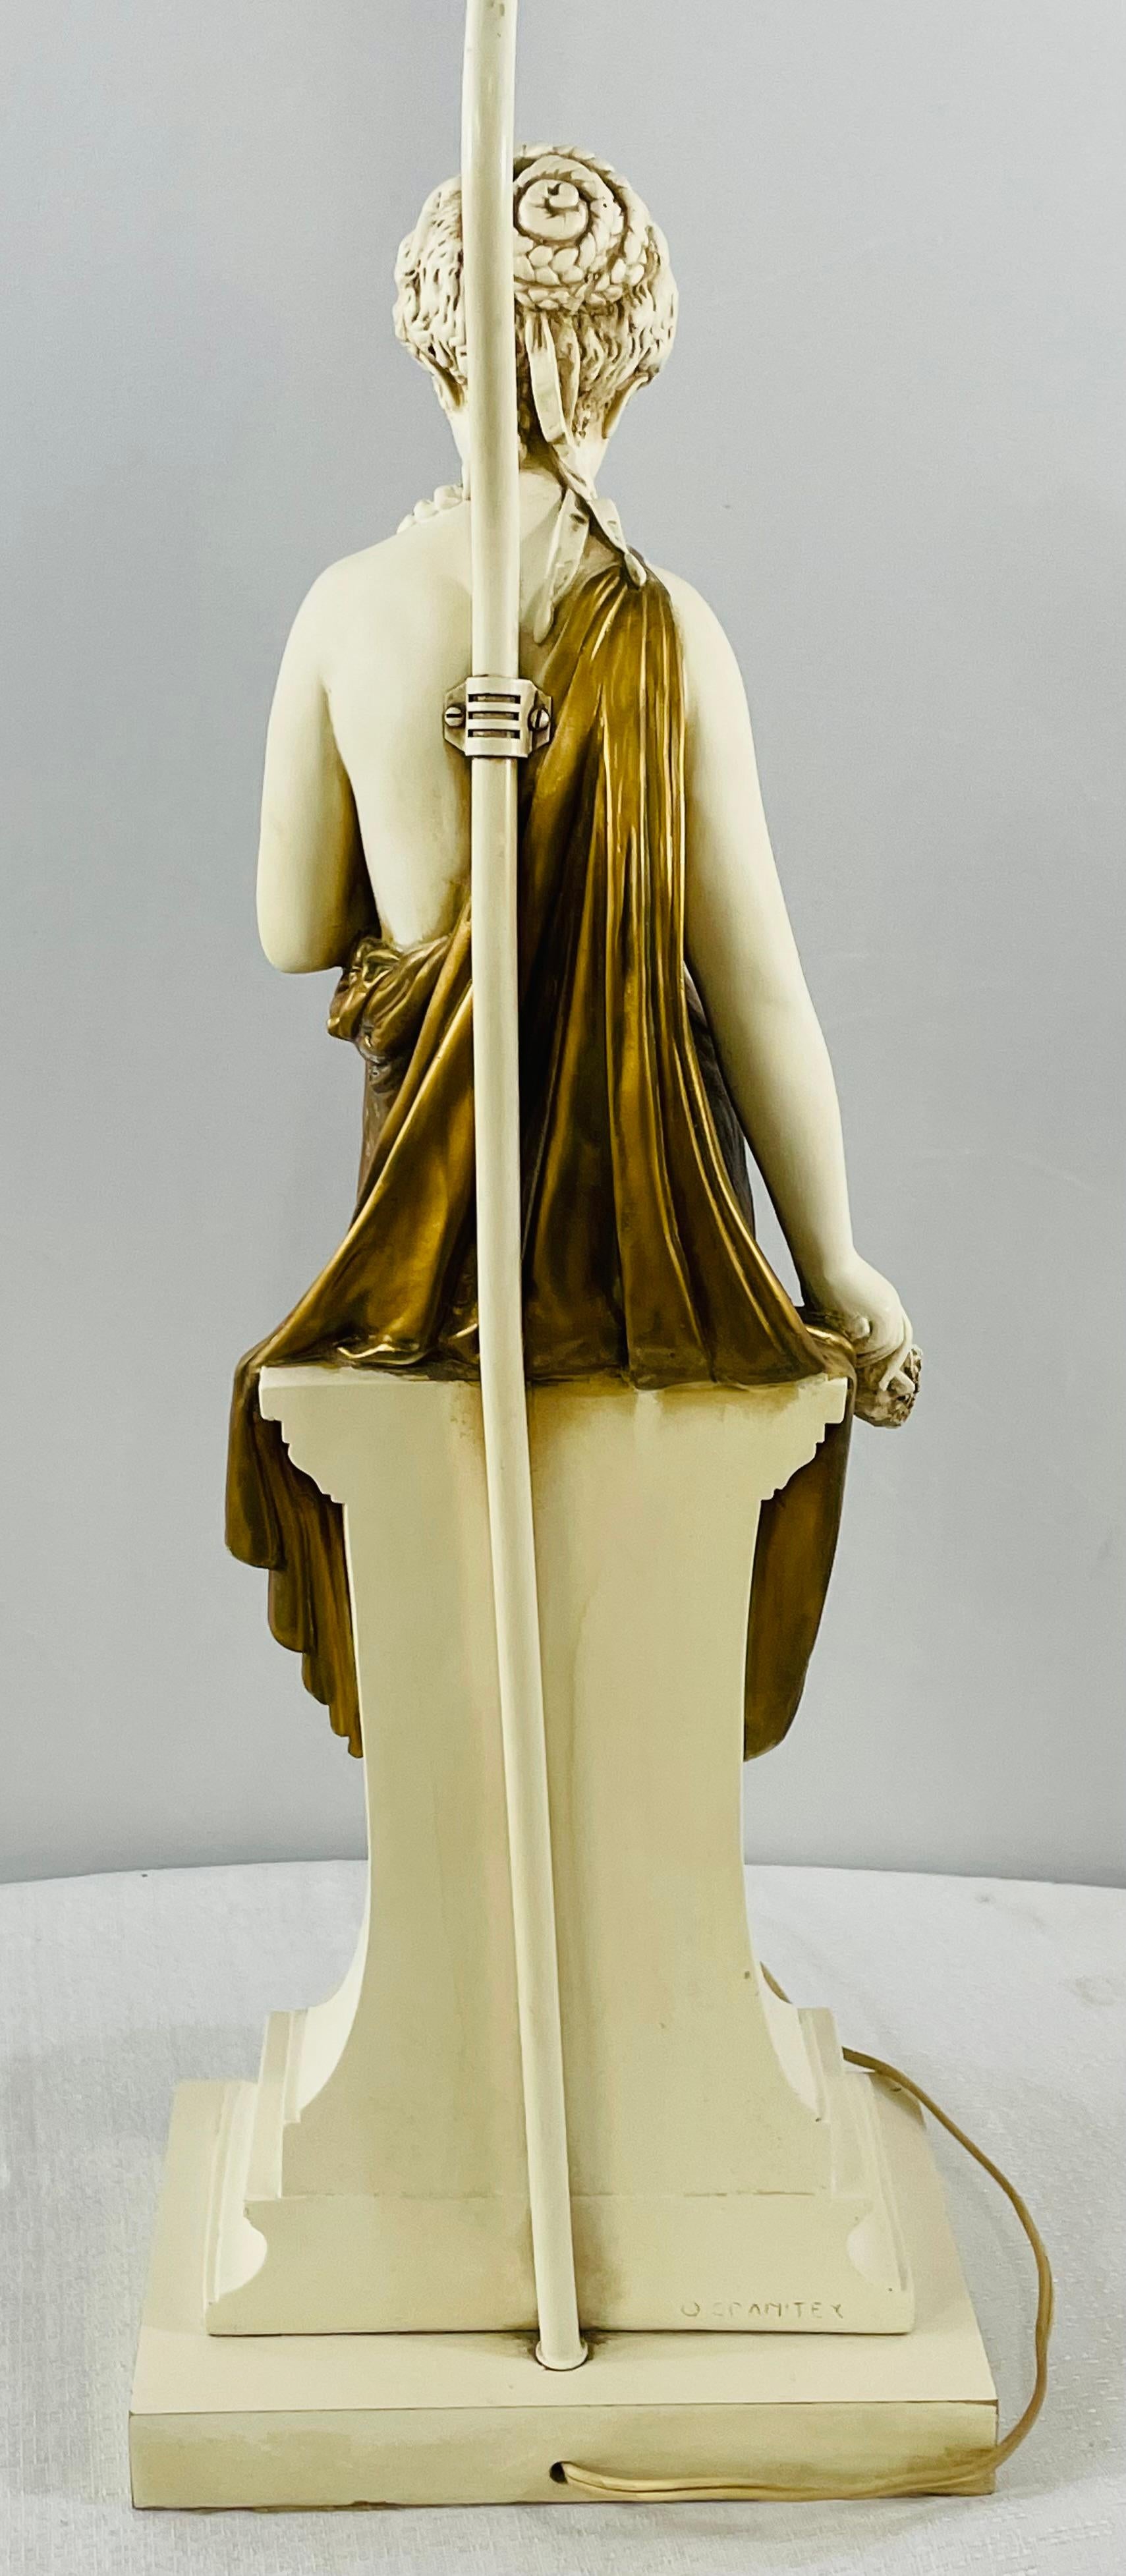 Large Art Nouveau Porcelain Female Nymph Sculpture by Granitex For Sale 11